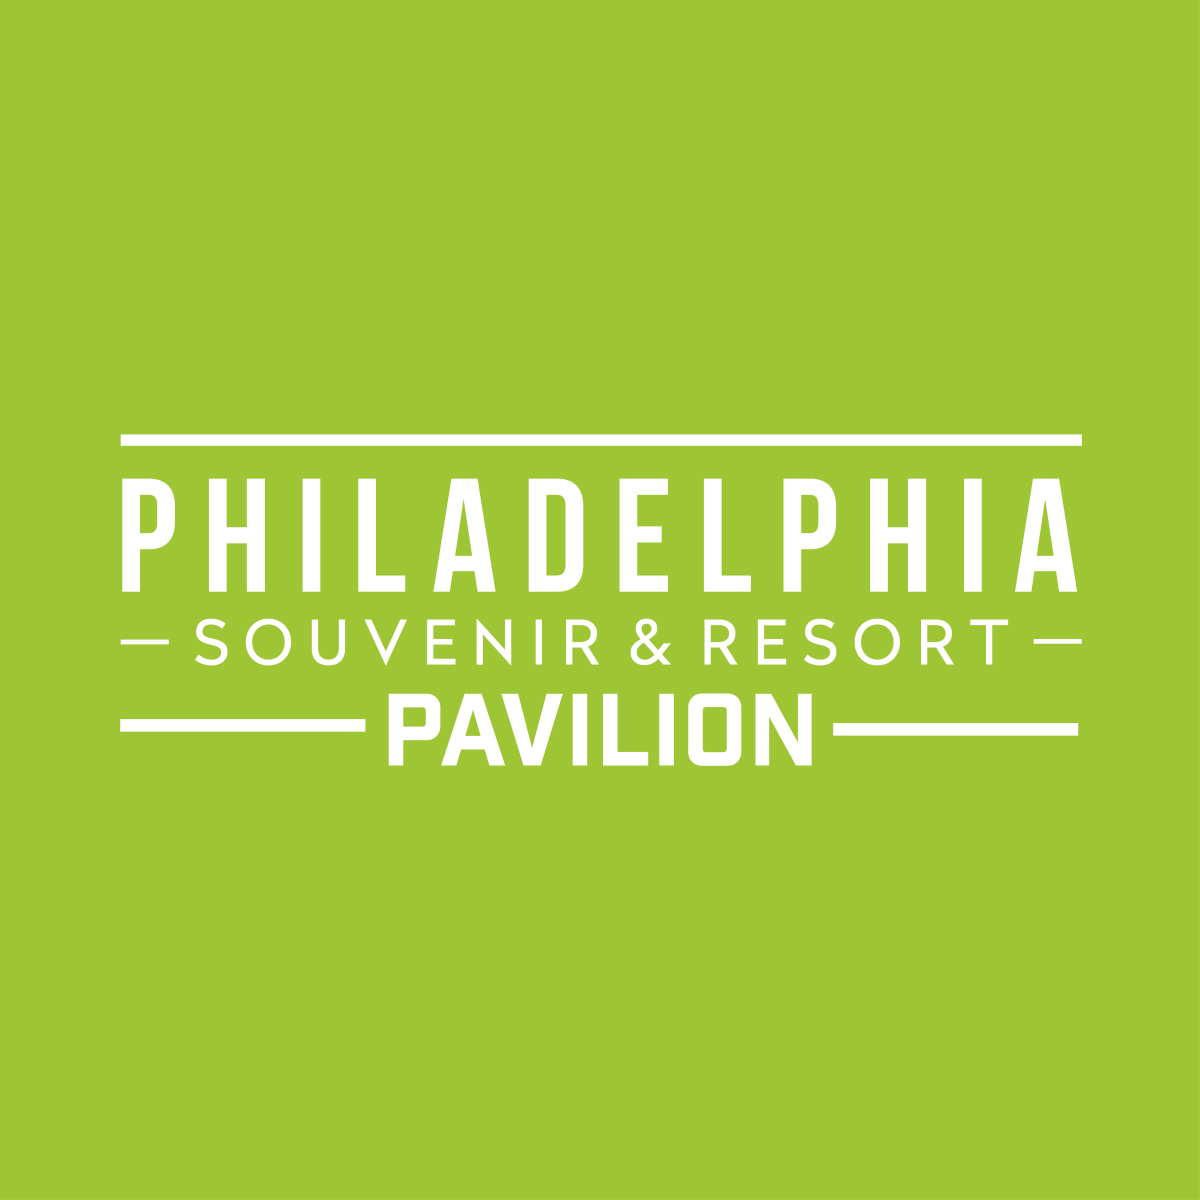 Philadelphia Souvenir & Resort Pavilion